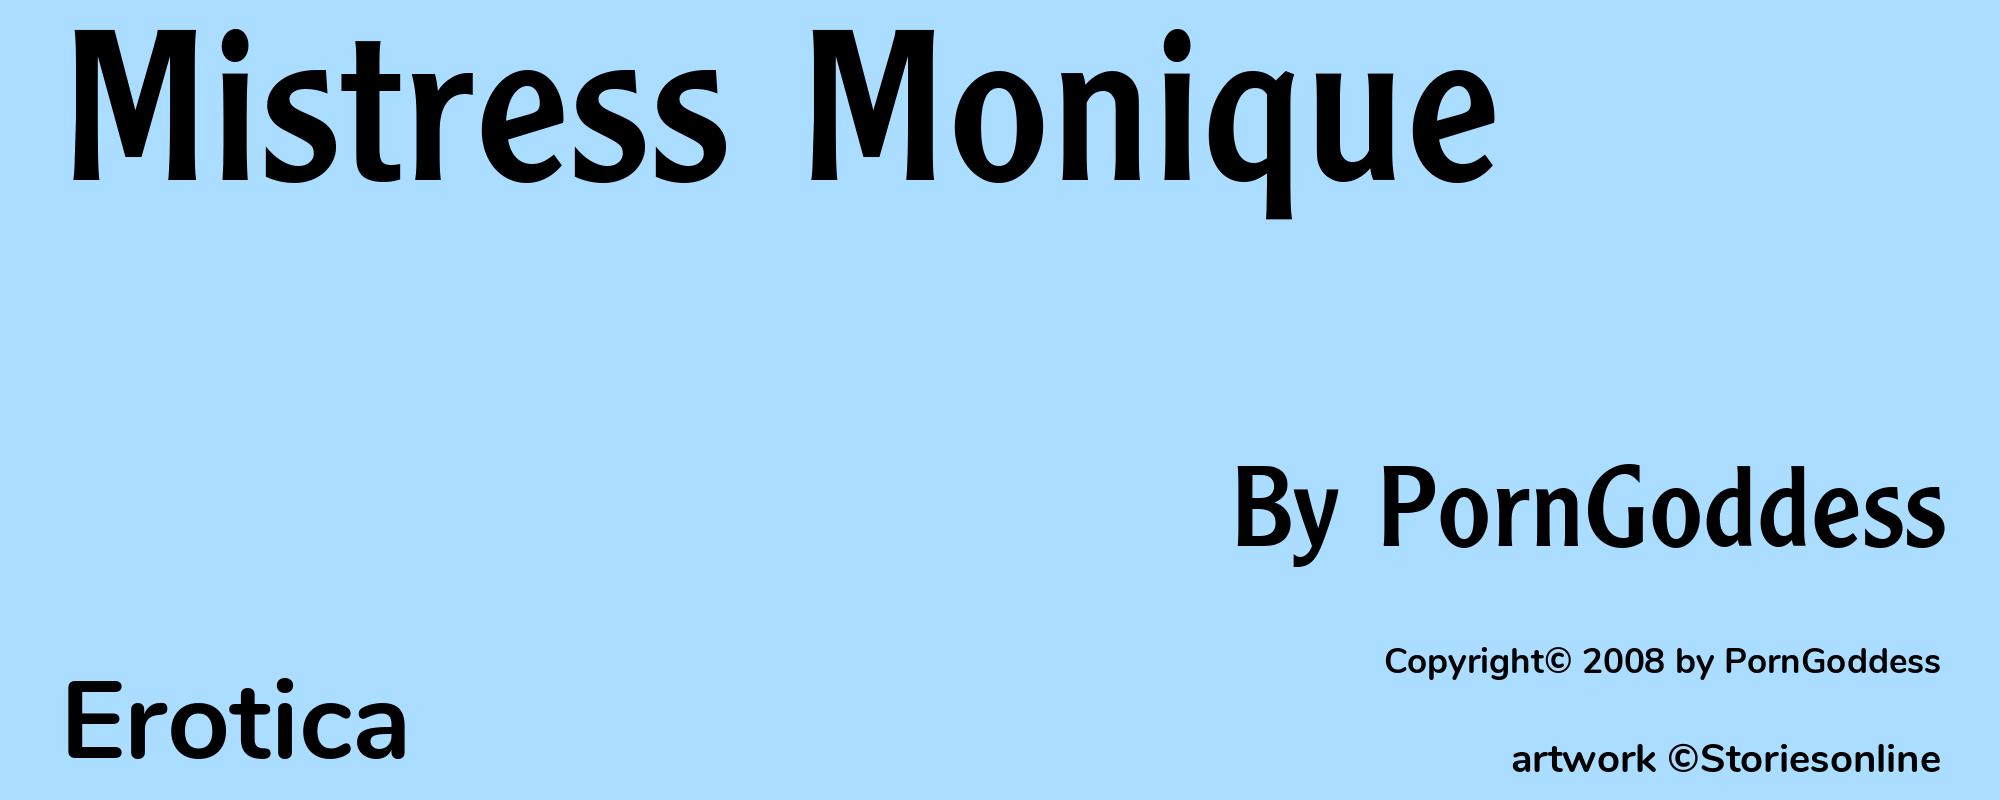 Mistress Monique - Cover